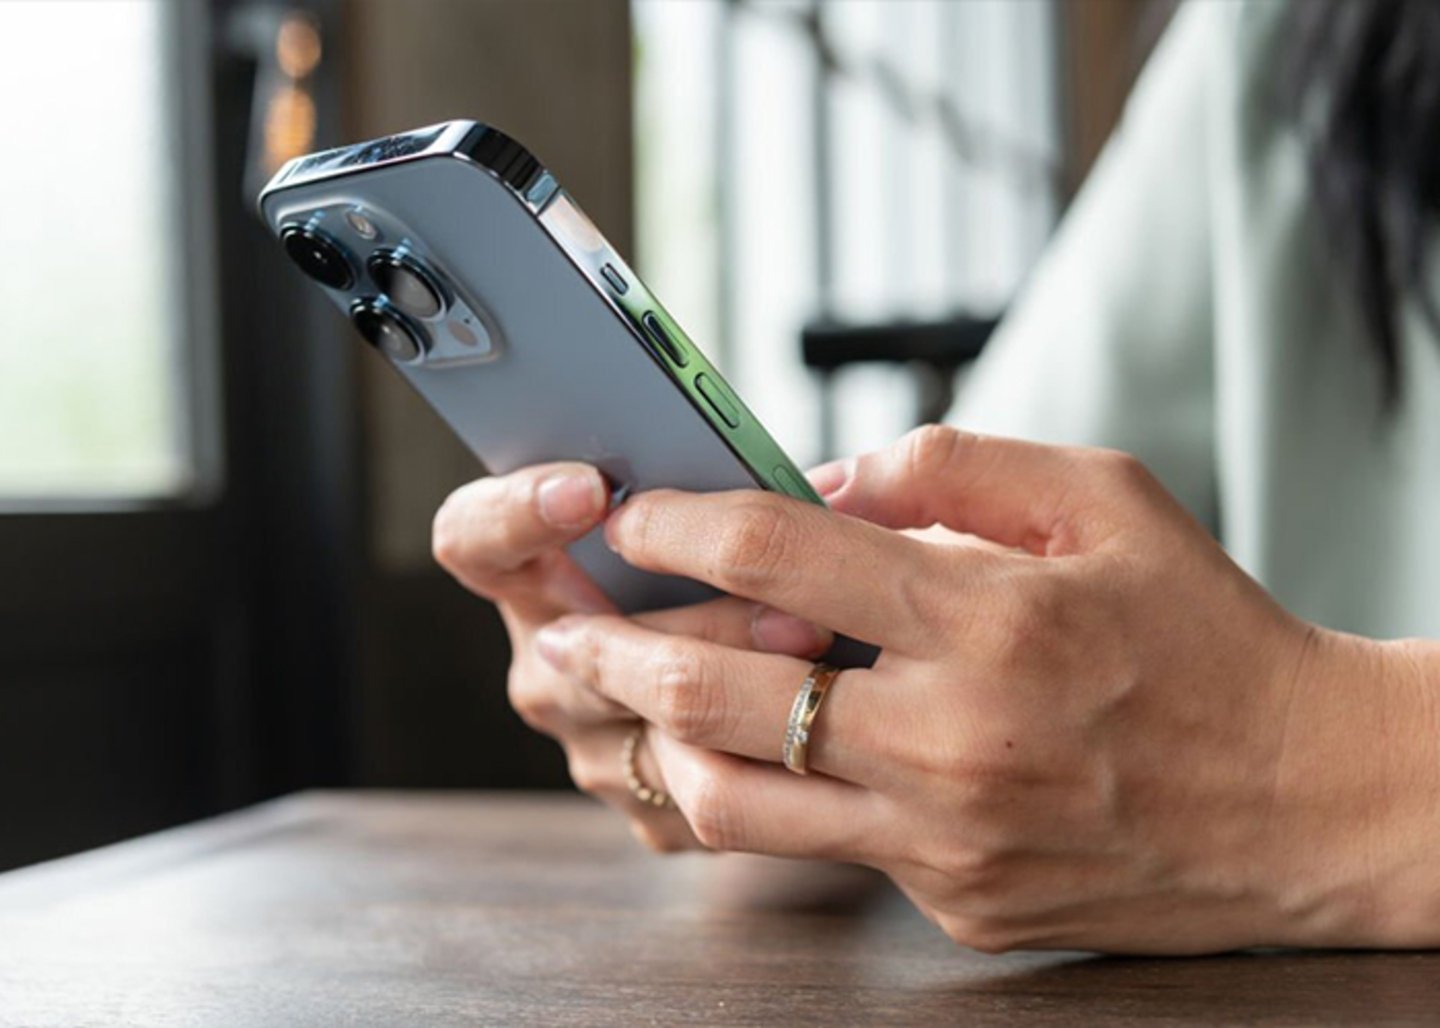 El poder de la conexion: como aprovechar al maximo el WiFi publico en tu iPhone